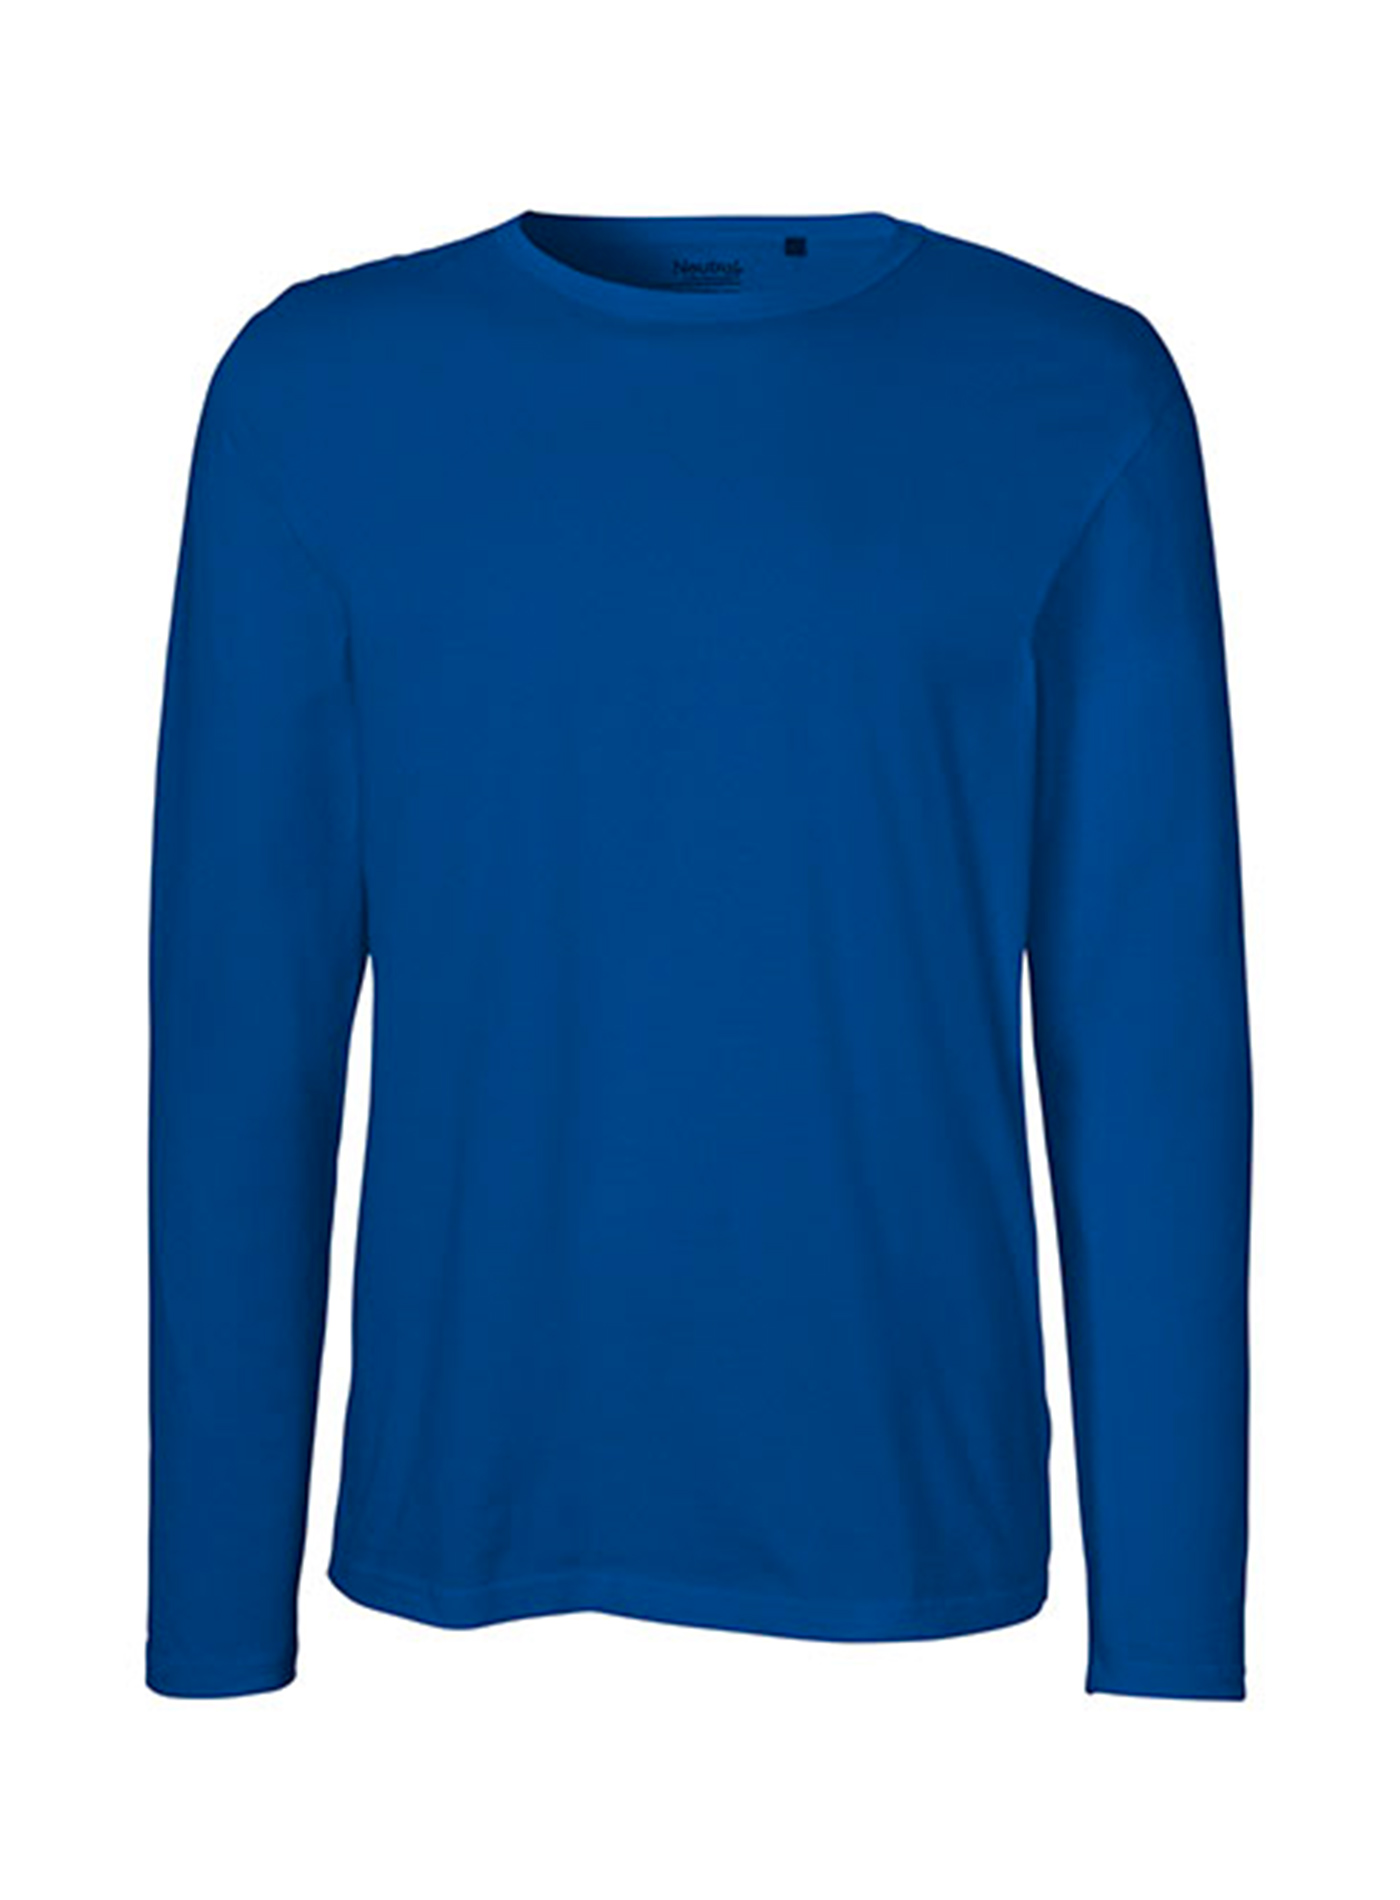 Pánské tričko s dlouhým rukávem Neutral - Královská modrá M